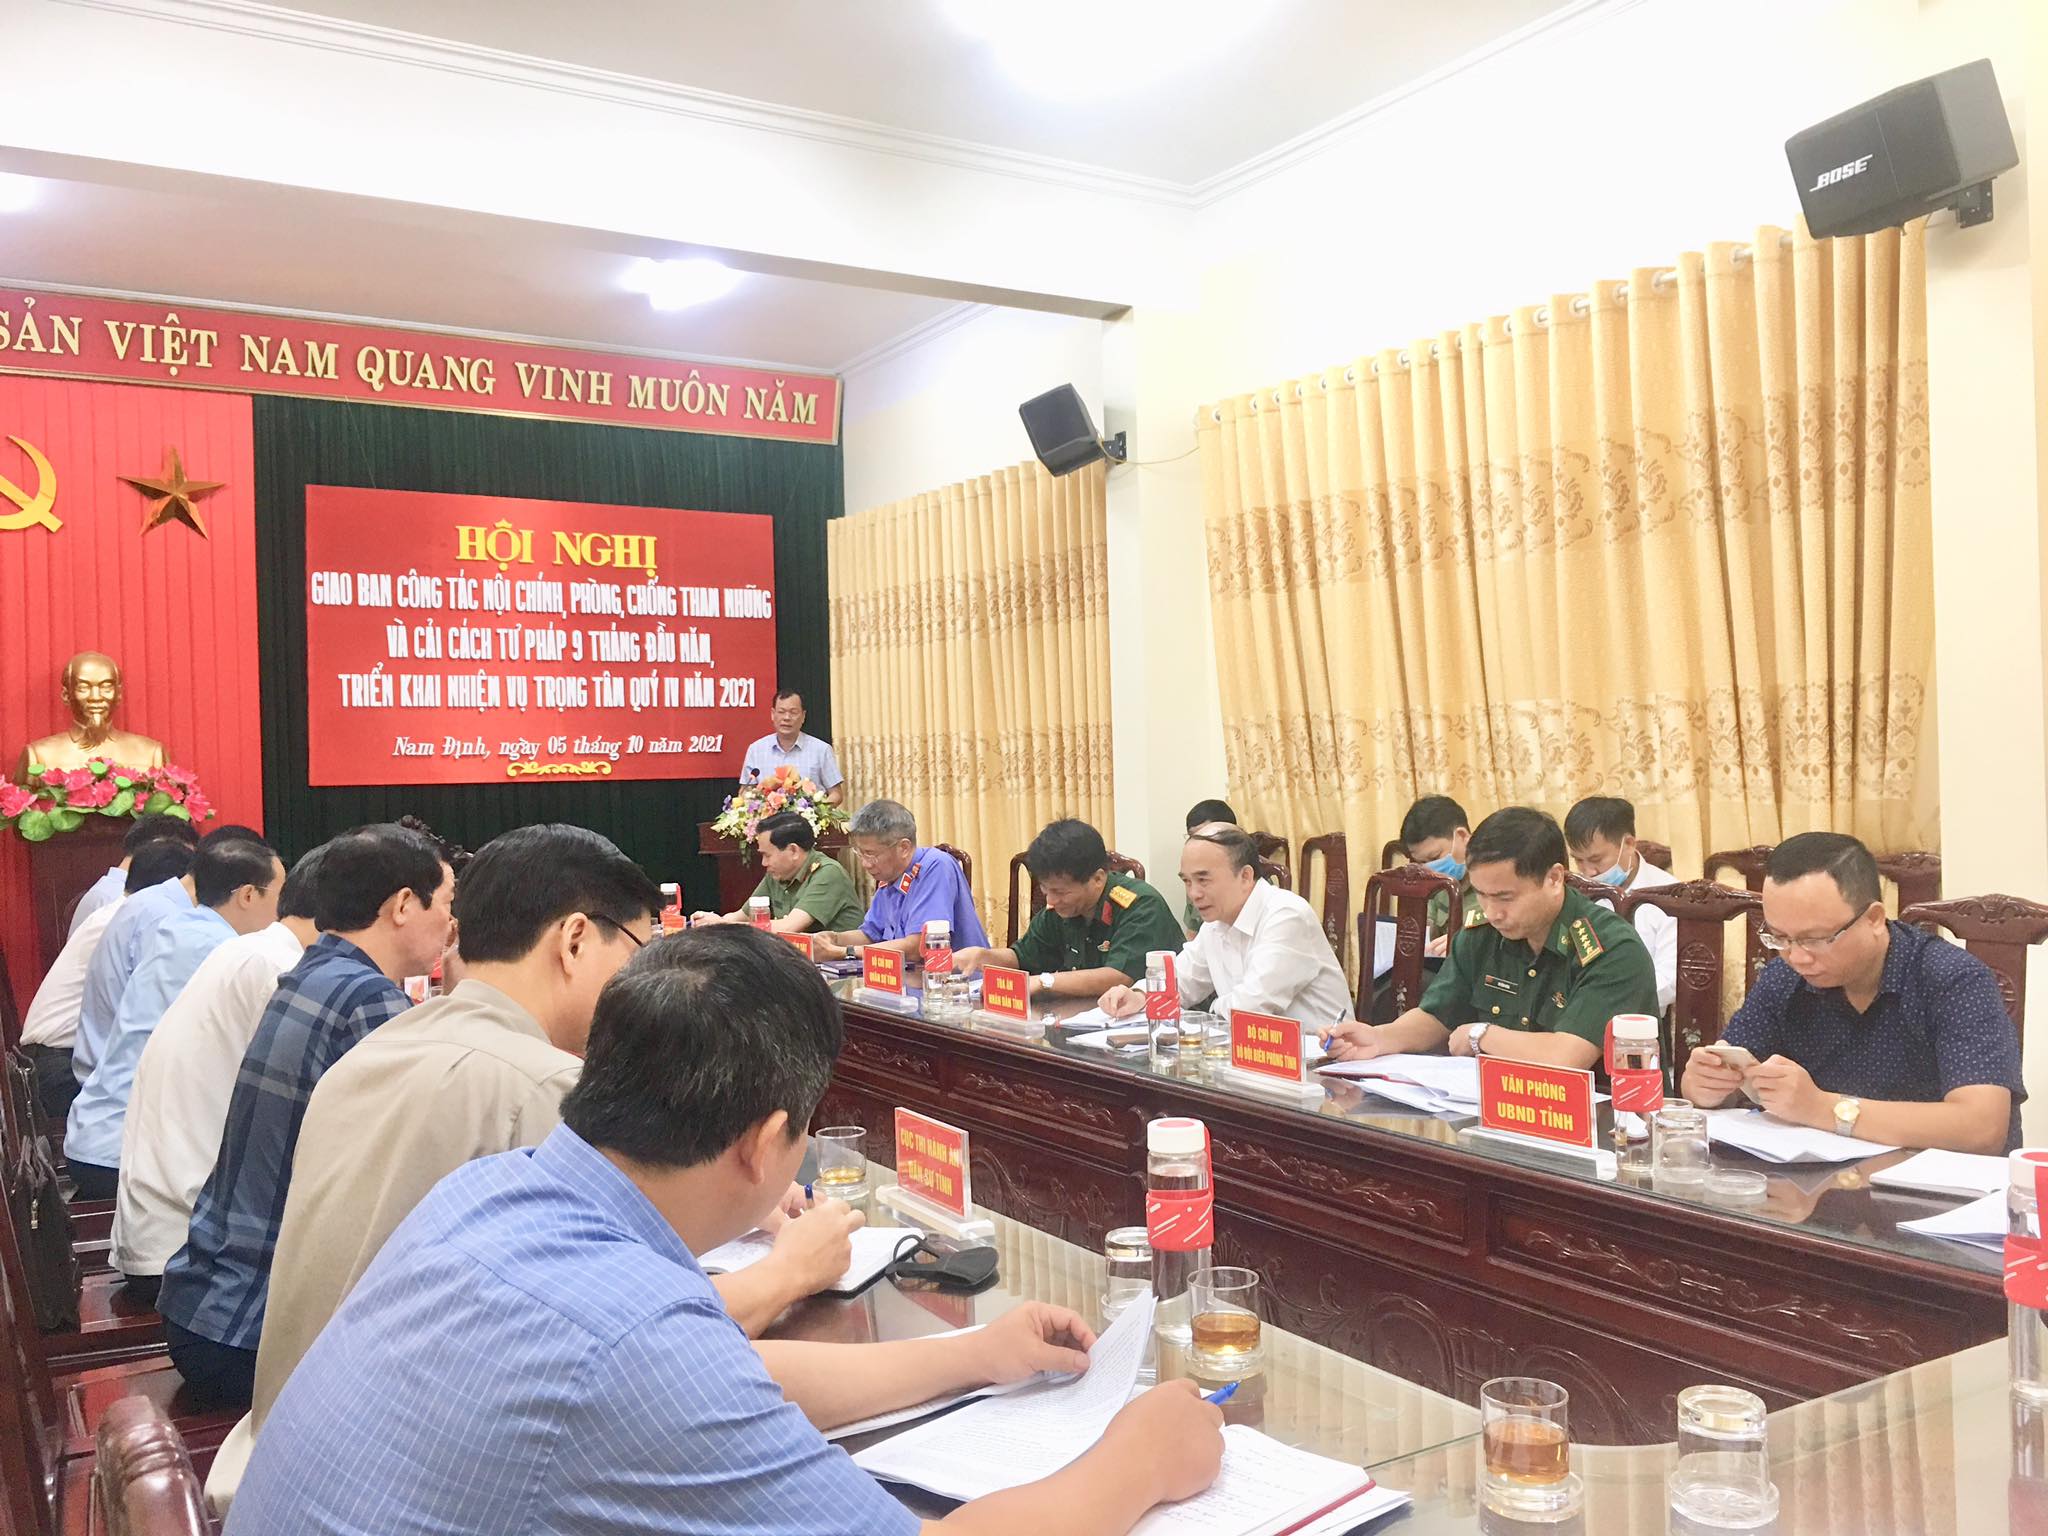 Tỉnh ủy Nam Định tổ chức Hội nghị giao ban công tác nội chính, phòng, chống tham nhũng và cải cách tư pháp 9 tháng năm 2021, triển khai nhiệm vụ trọng tâm Quý IV năm 2021